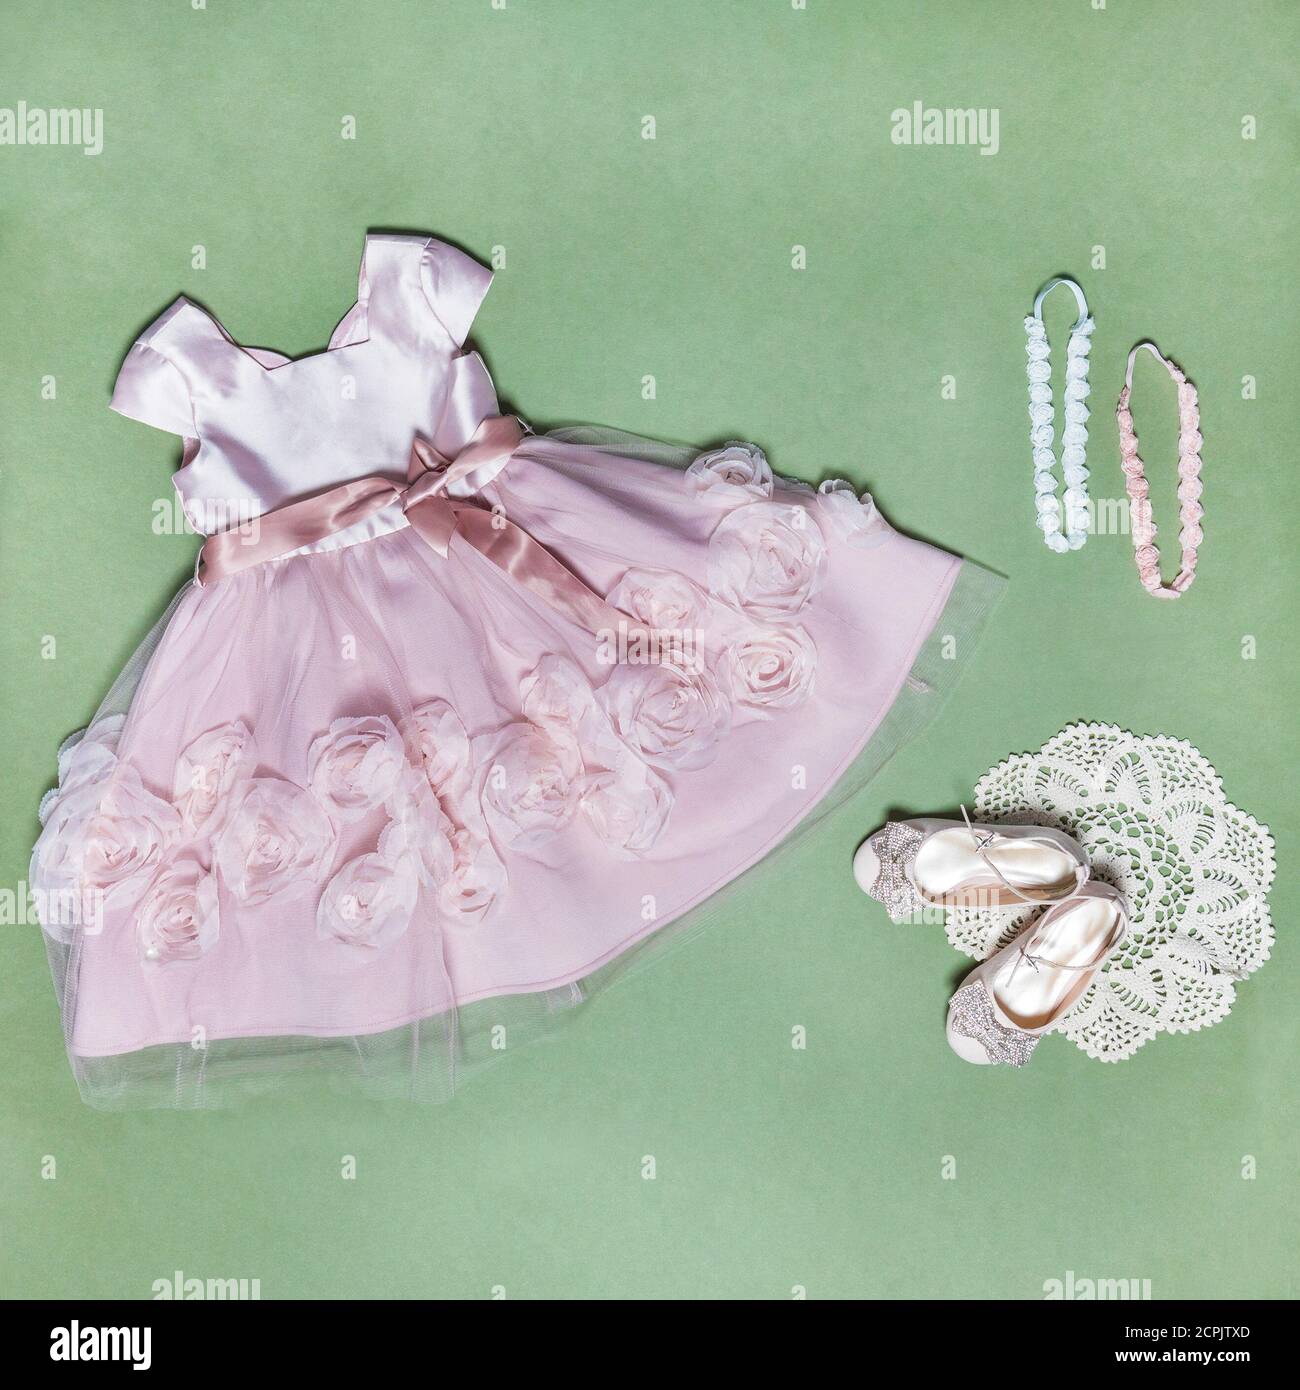 Sommer Baby Mädchen Spitzen Schichten Plaid Kleid, Kinder Prinzessin Geburtstag  Kleider Kleidung Draufsicht Stockfotografie - Alamy